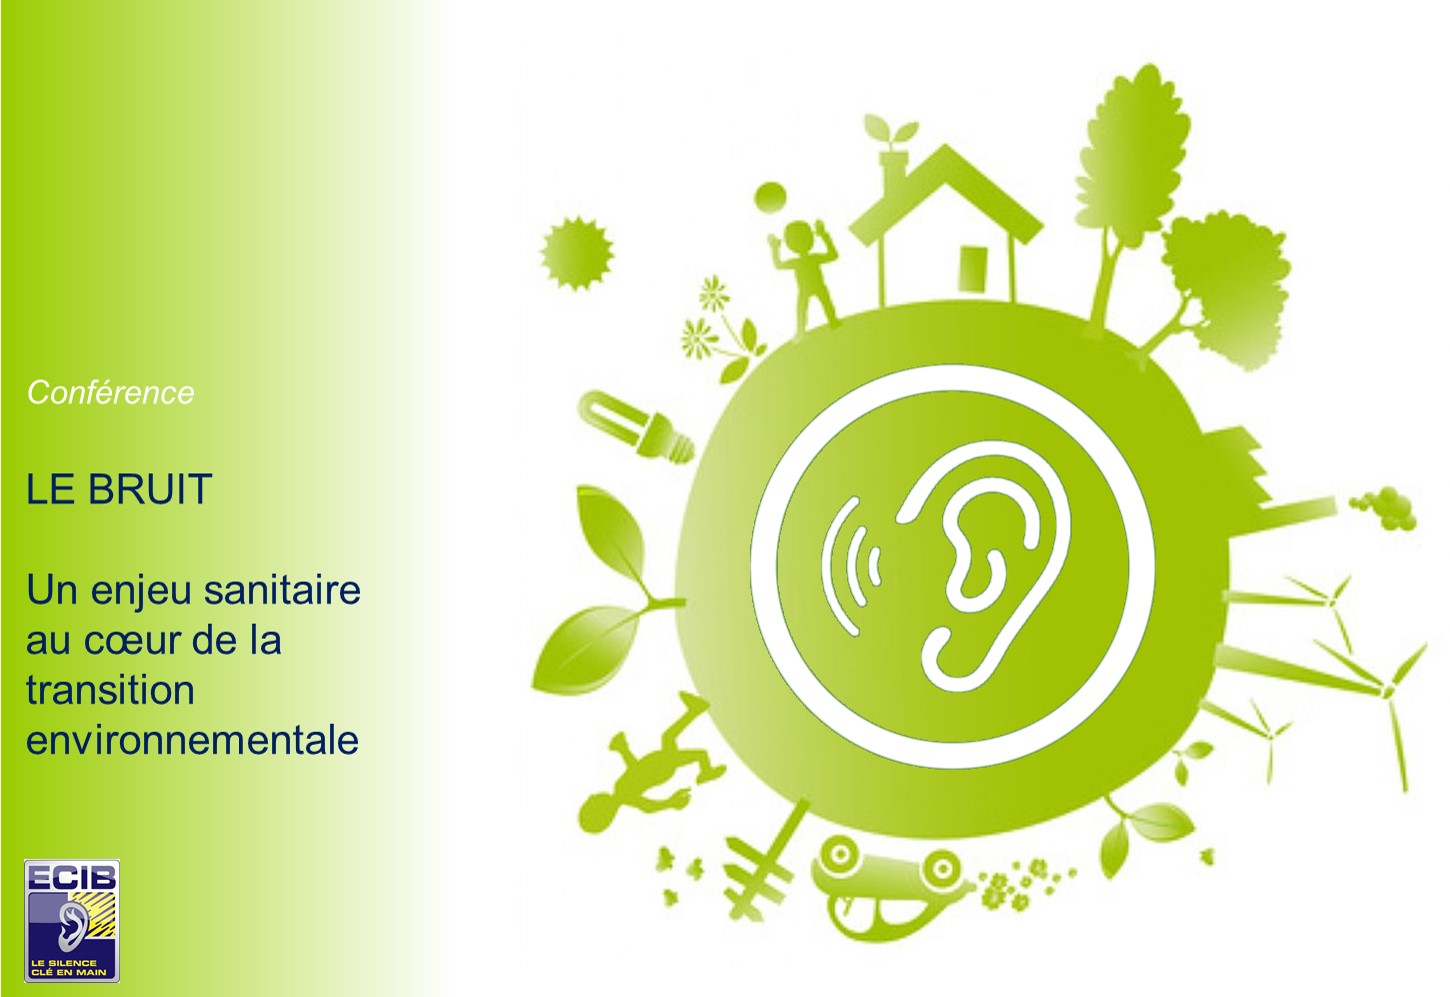 Conférence : ﻿﻿﻿﻿﻿﻿﻿﻿﻿﻿﻿﻿﻿﻿﻿﻿﻿﻿﻿﻿﻿﻿﻿﻿﻿﻿﻿﻿﻿﻿﻿﻿﻿﻿Le Bruit, un enjeu sanitaire au cœur de la transition environnementale